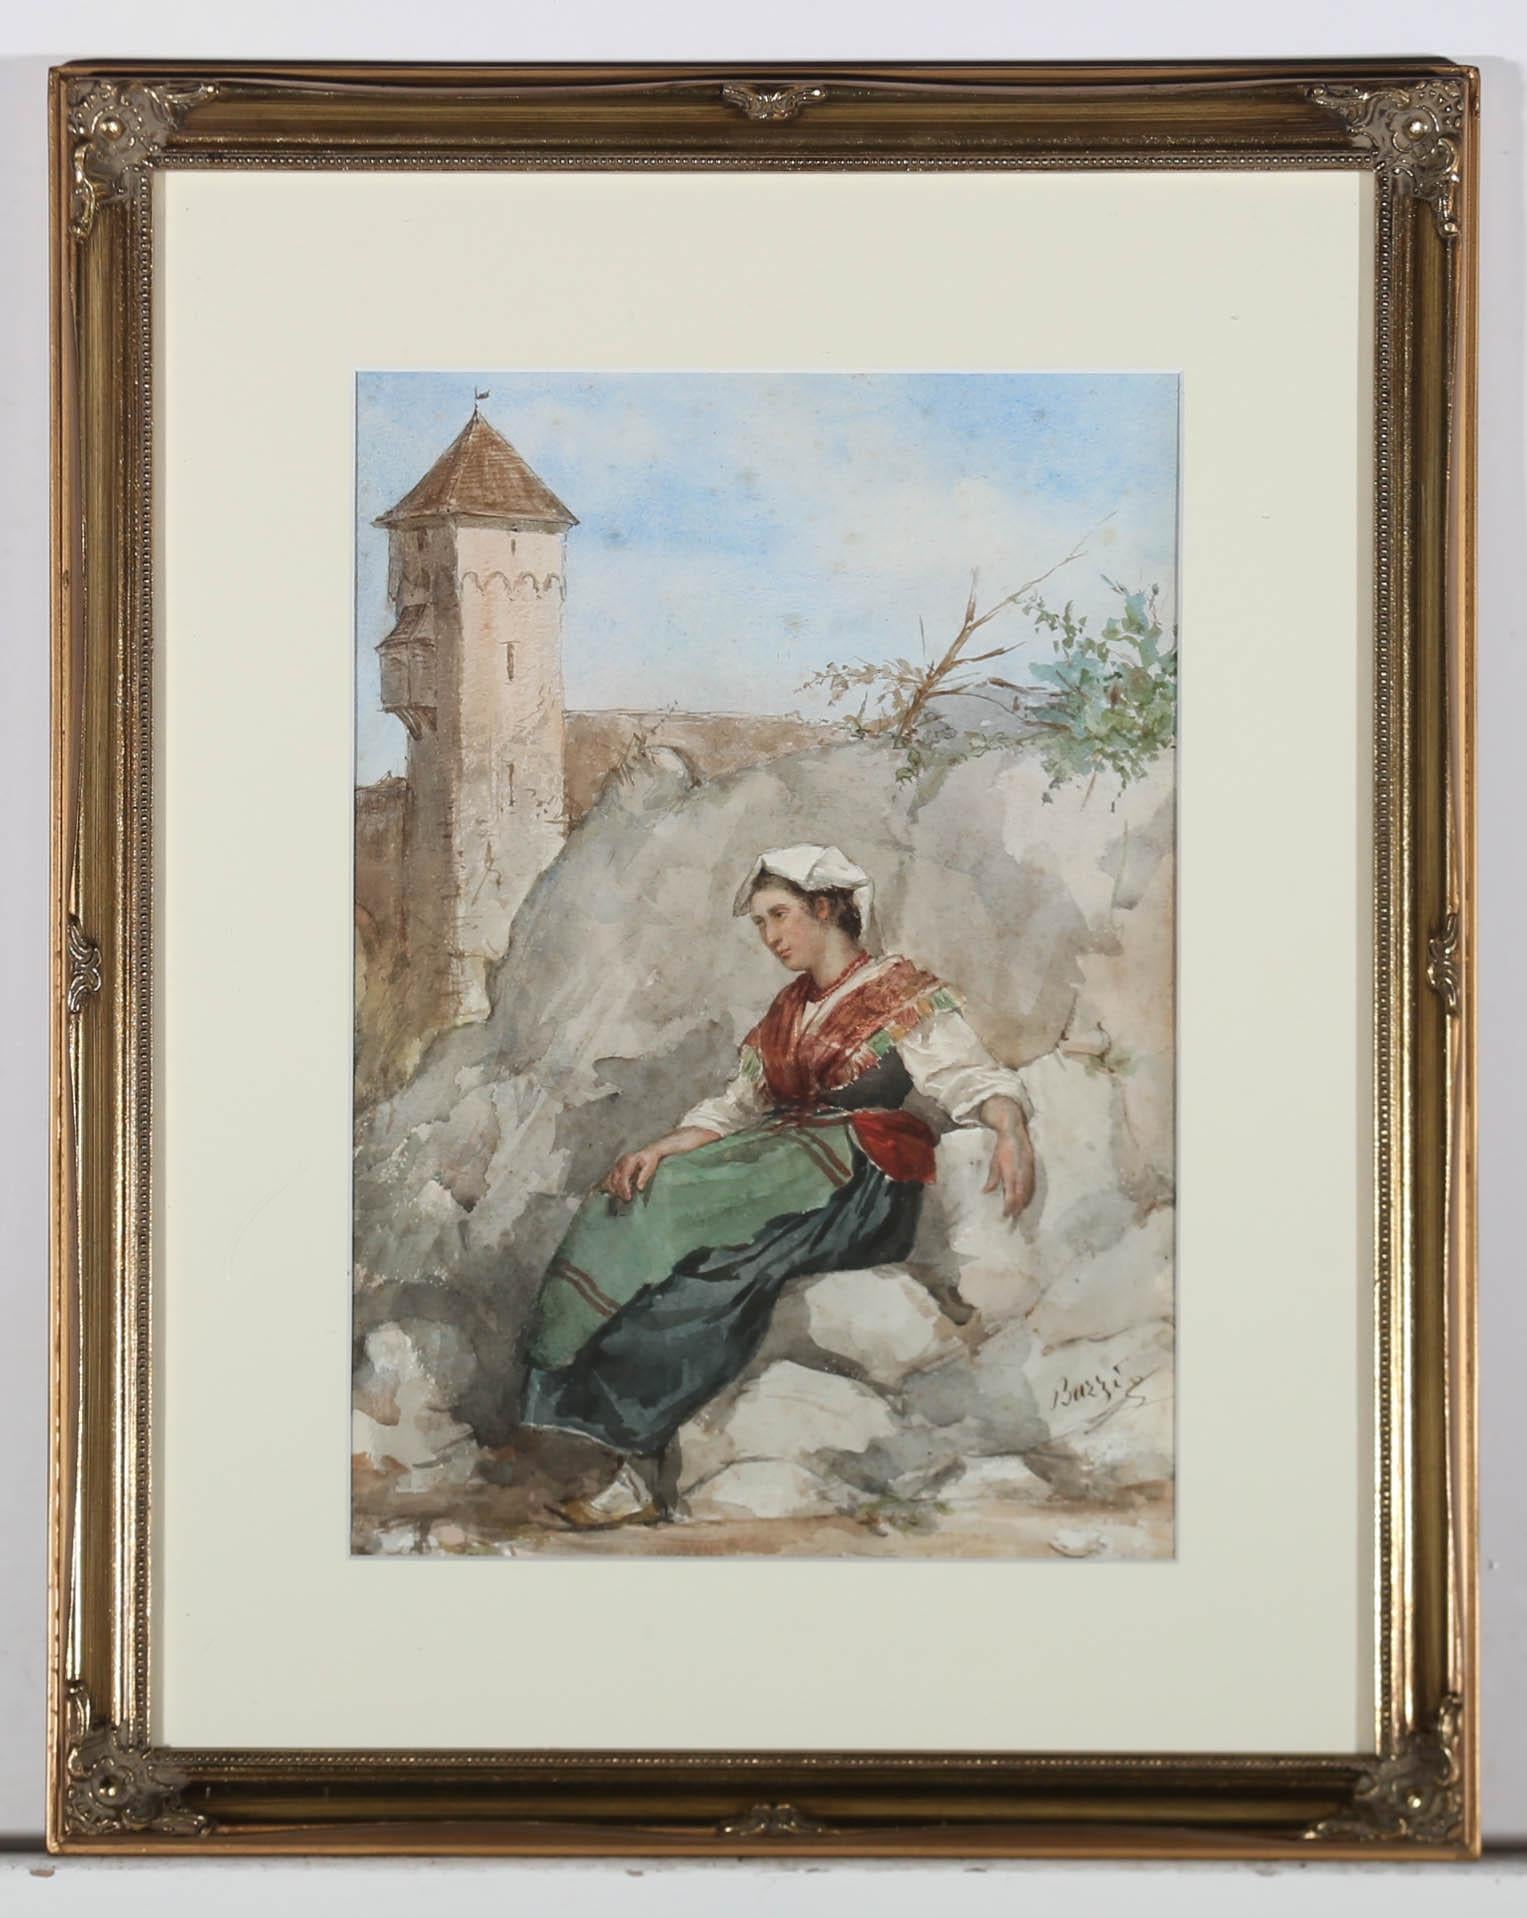  Achille Buzzi - Framed Italian School  19th Century Watercolour, Contemplation For Sale 2